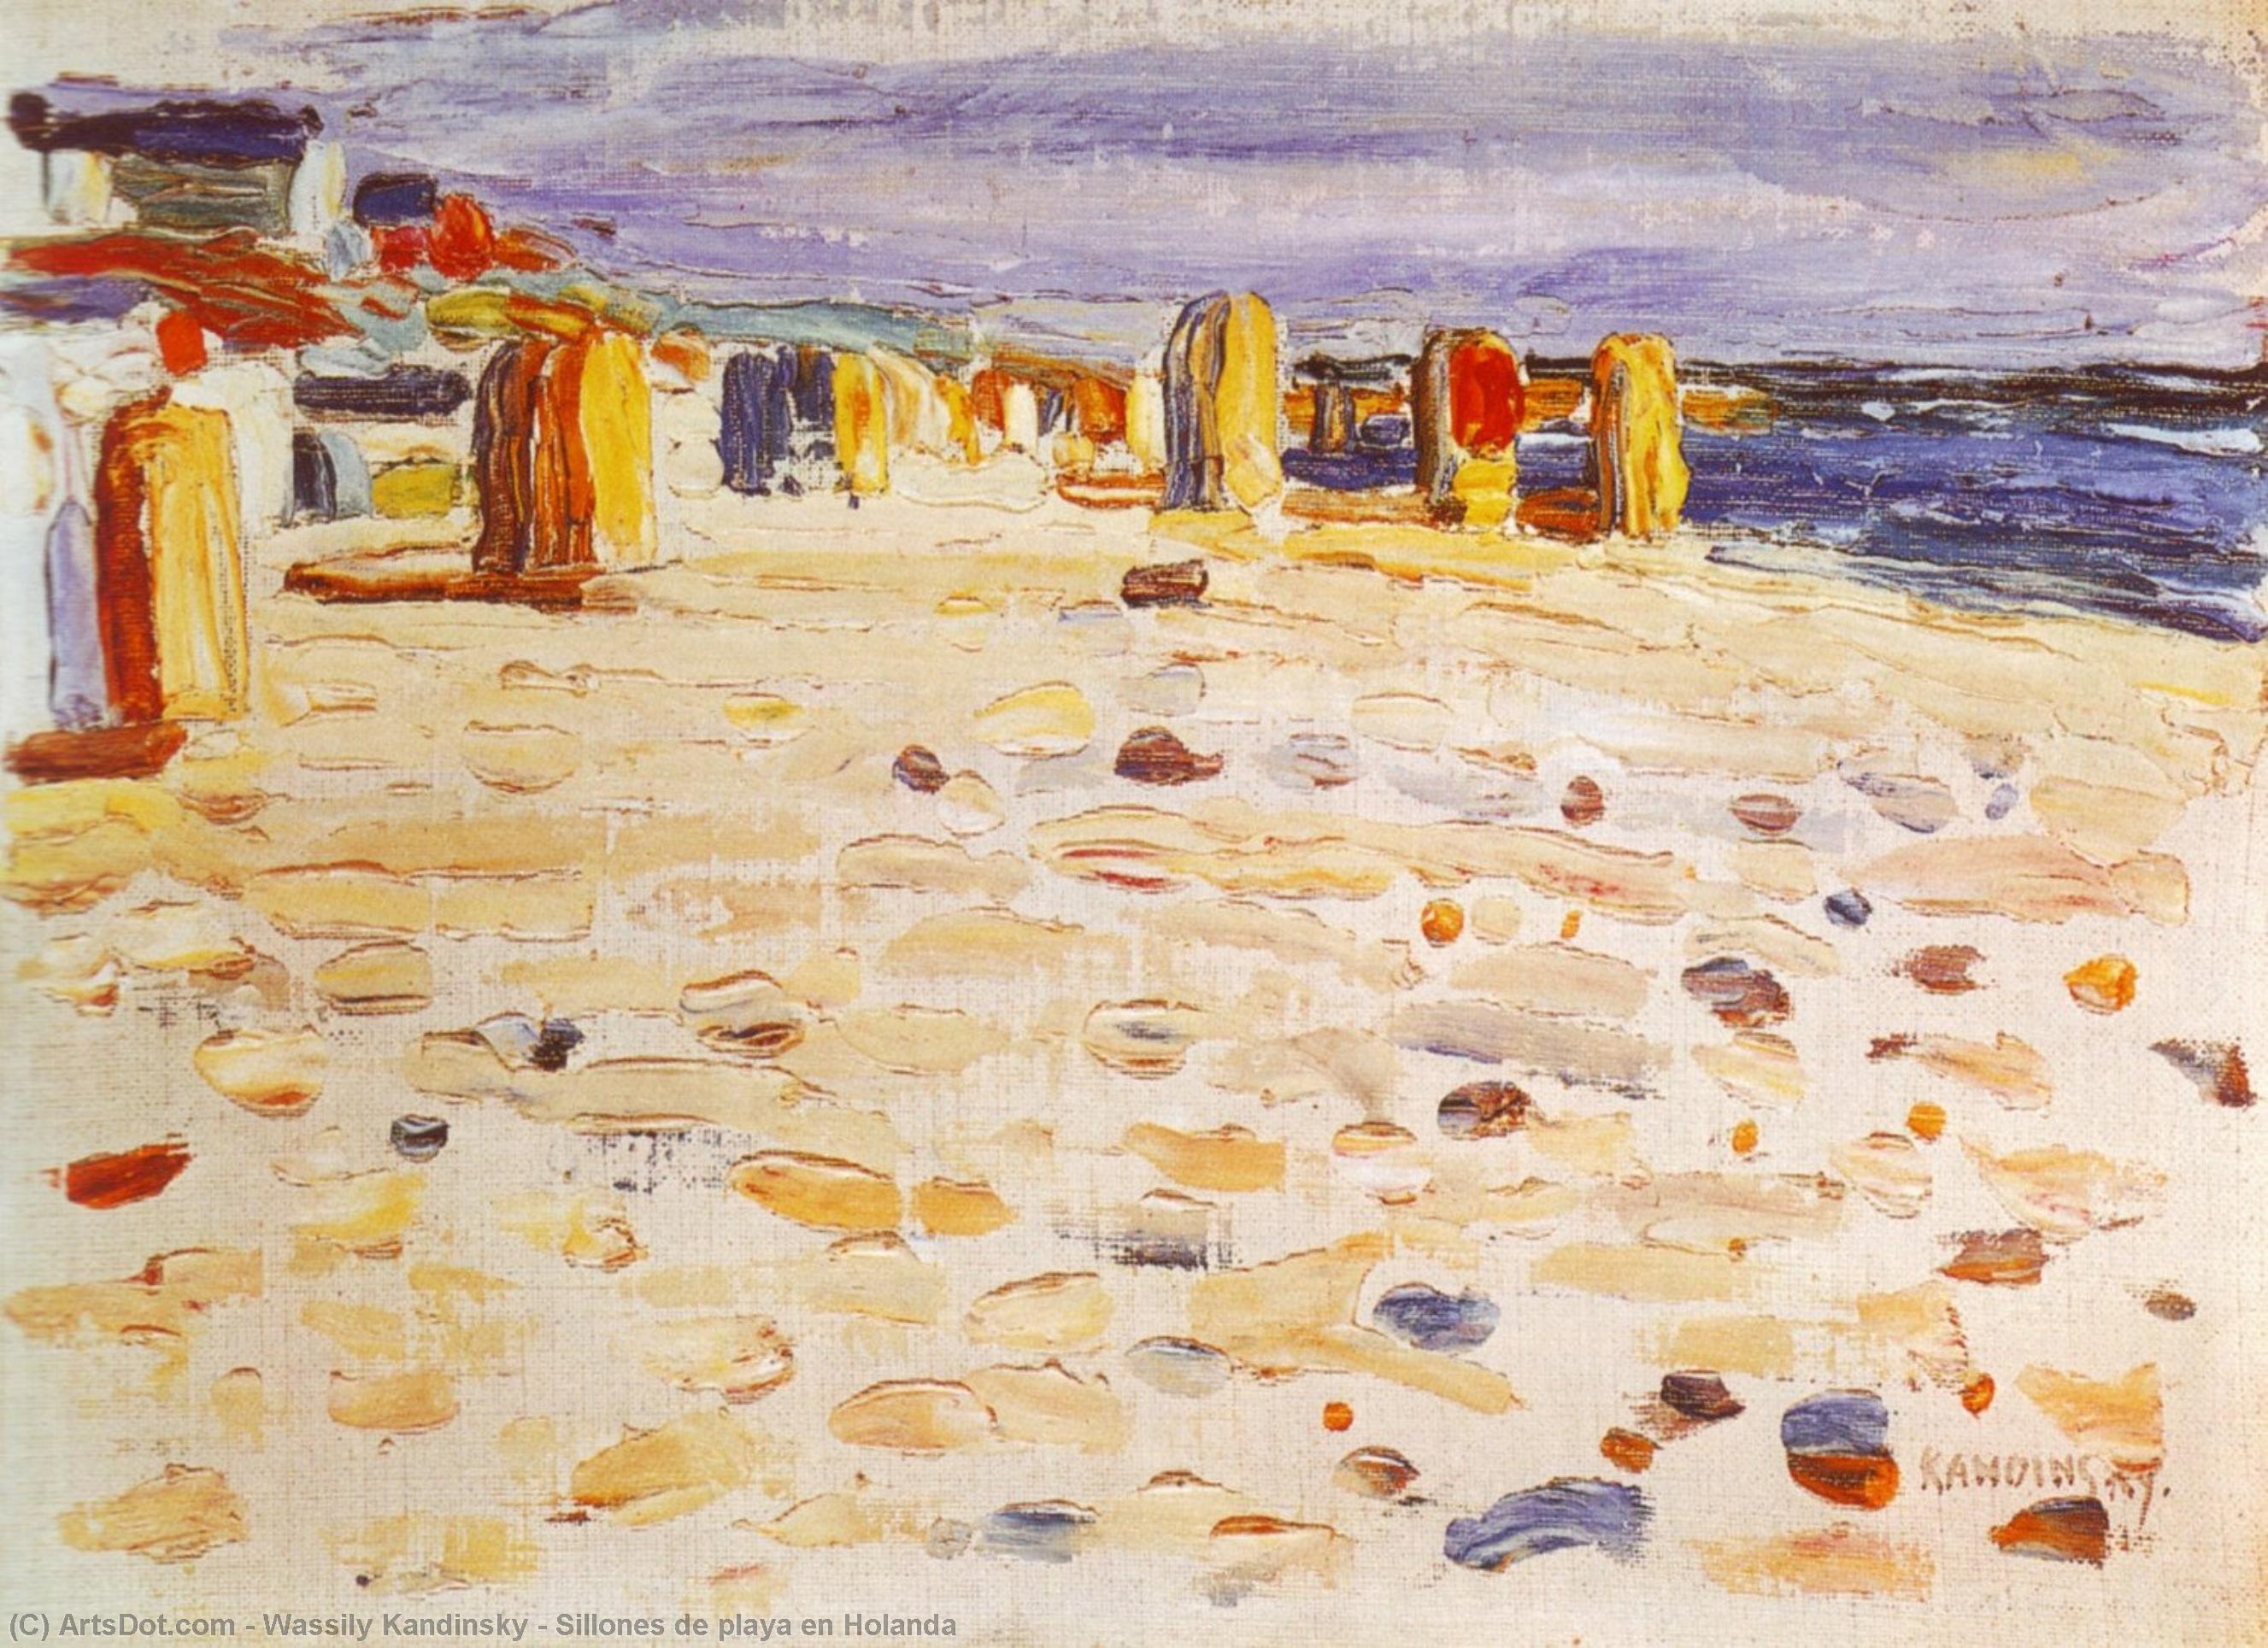 WikiOO.org - Encyclopedia of Fine Arts - Målning, konstverk Wassily Kandinsky - Sillones de playa en Holanda